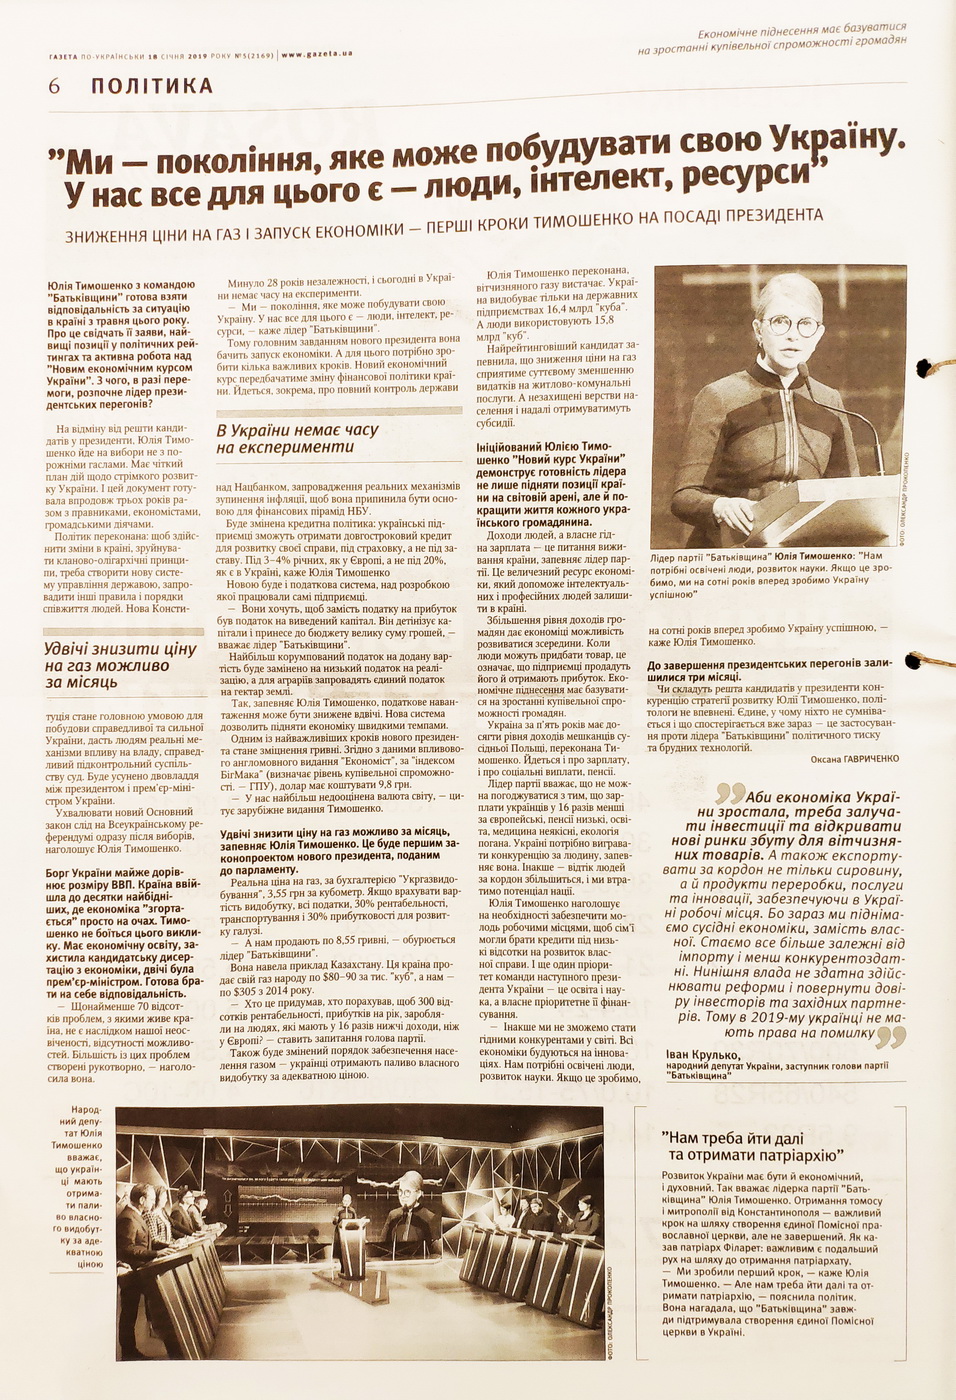 28 01 2019 Kyiv gazety dzynsa tymoshenko4